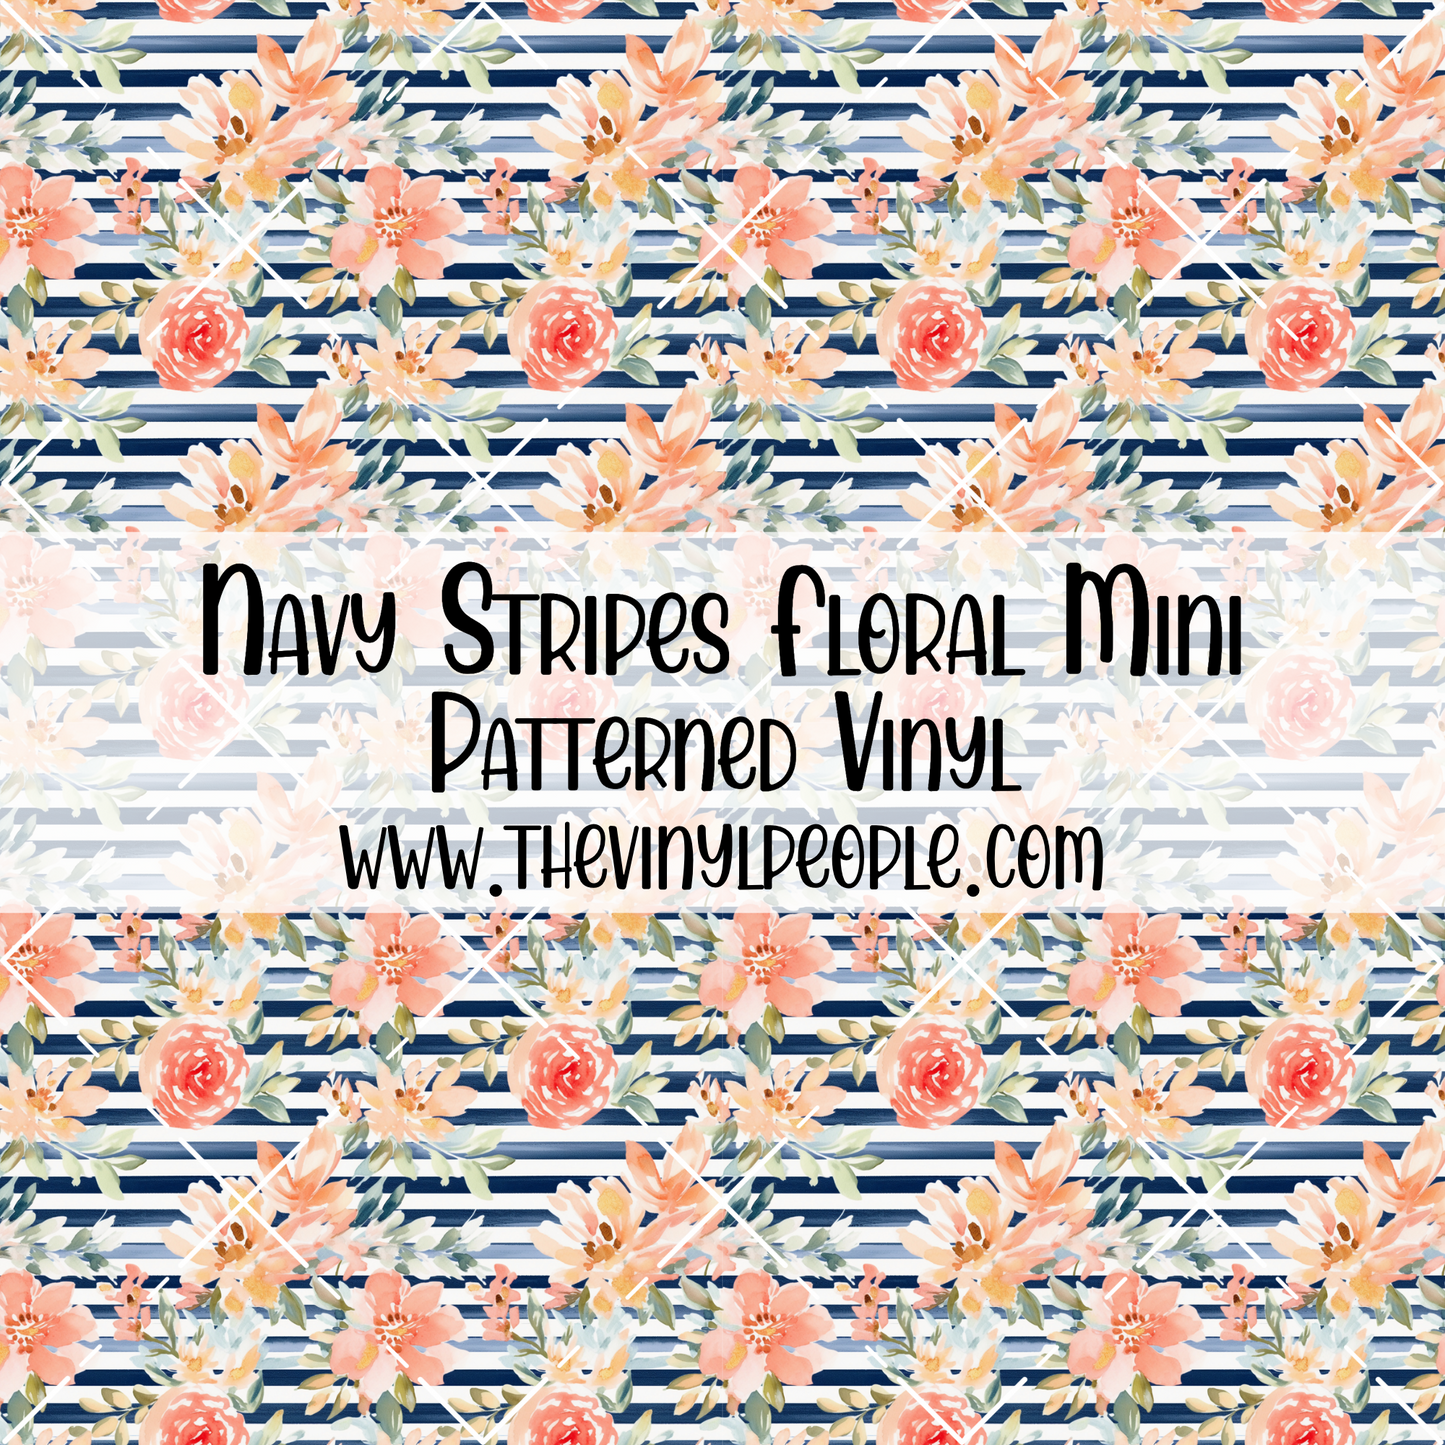 Navy Stripes Floral Patterned Vinyl